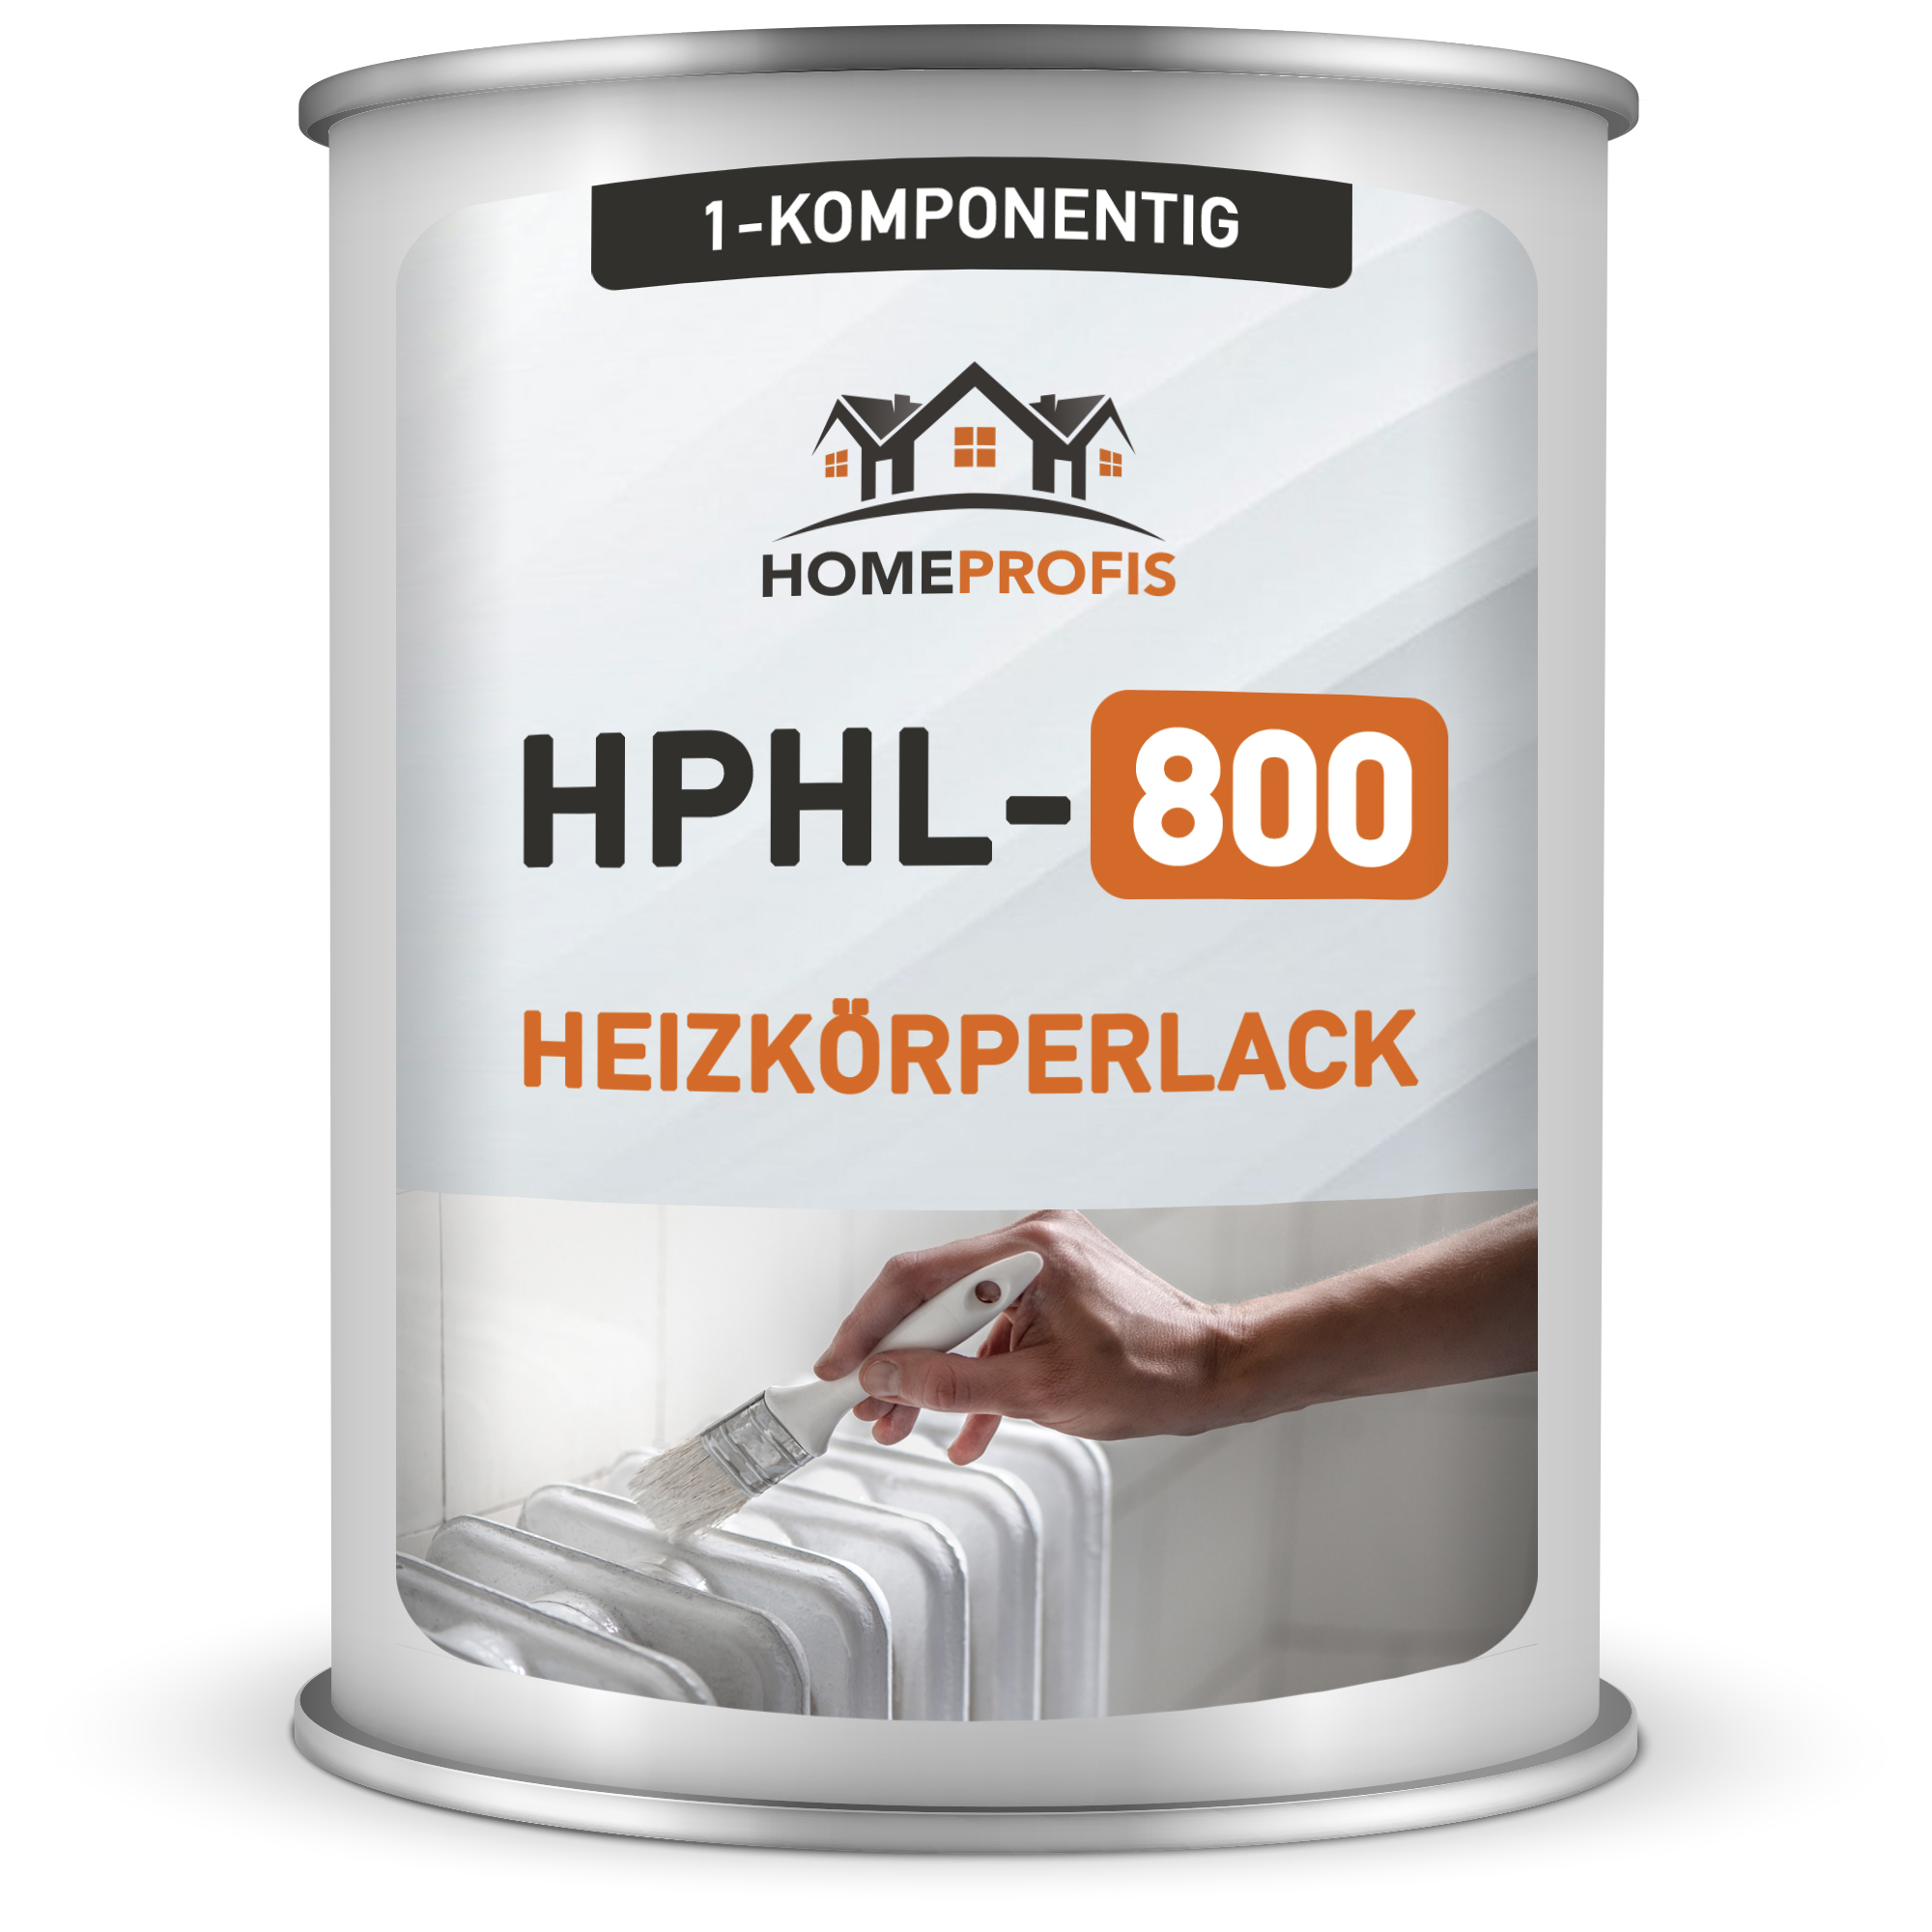 HPHL-800 Heizkörperlack